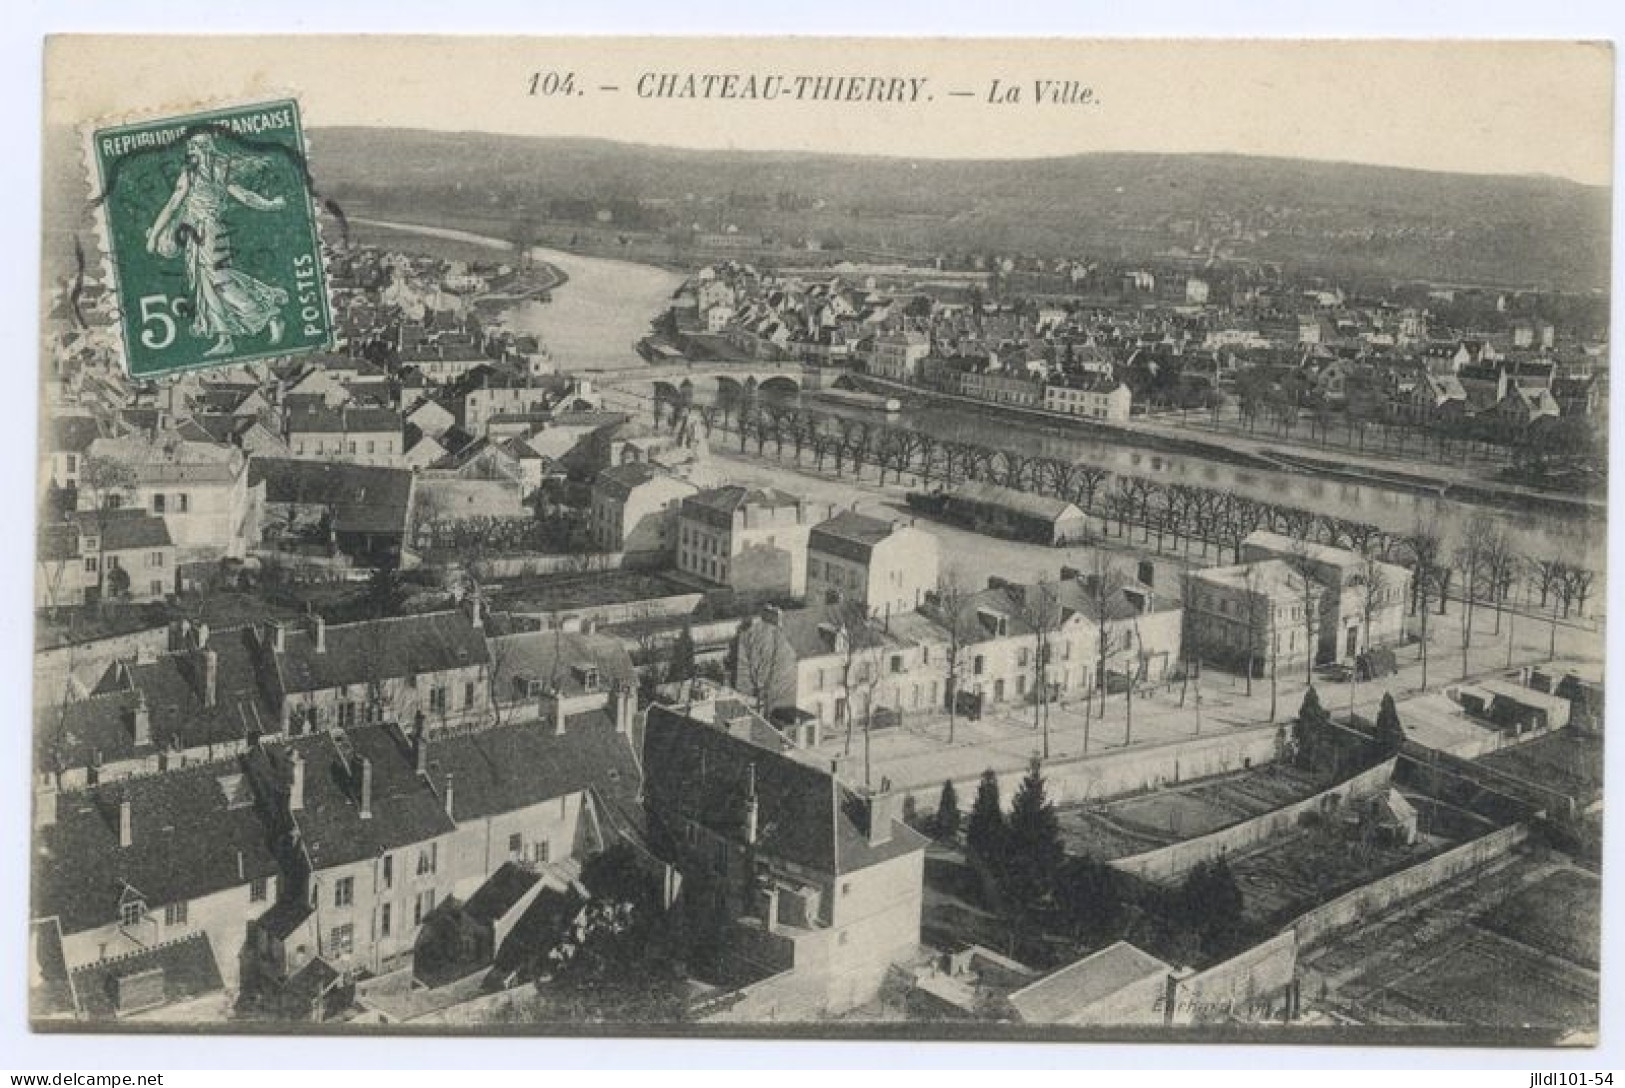 Château-Thierry, La Ville (lt 10) - Chateau Thierry